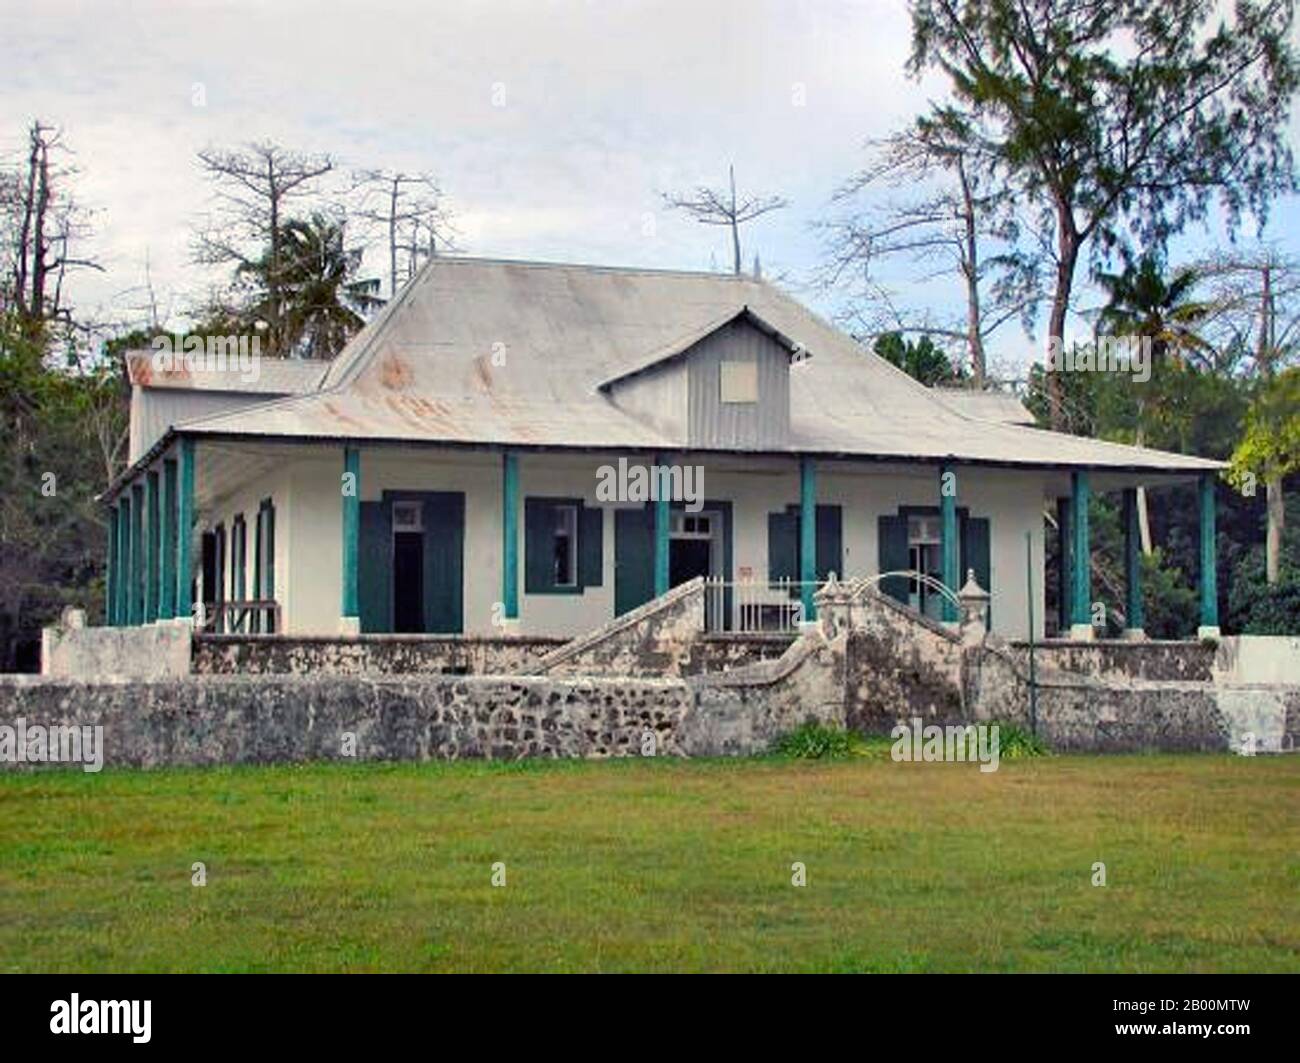 BIOT (territorio britannico dell'Oceano Indiano): Ariel House. Il territorio britannico dell'Oceano Indiano (BIOT) o le isole Chagos (precedentemente le isole del petrolio) è un territorio d'oltremare del Regno Unito situato nell'Oceano Indiano, a metà strada fra l'Africa e l'Indonesia. Il territorio comprende un gruppo di sette atolli che comprende più di 60 isole singole, situate a circa 500 chilometri (310 miglia) a sud dell'arcipelago delle Maldive. L'isola più grande è Diego Garcia (area 44 km quadrati), il sito di una struttura militare congiunta del Regno Unito e degli Stati Uniti. Foto Stock